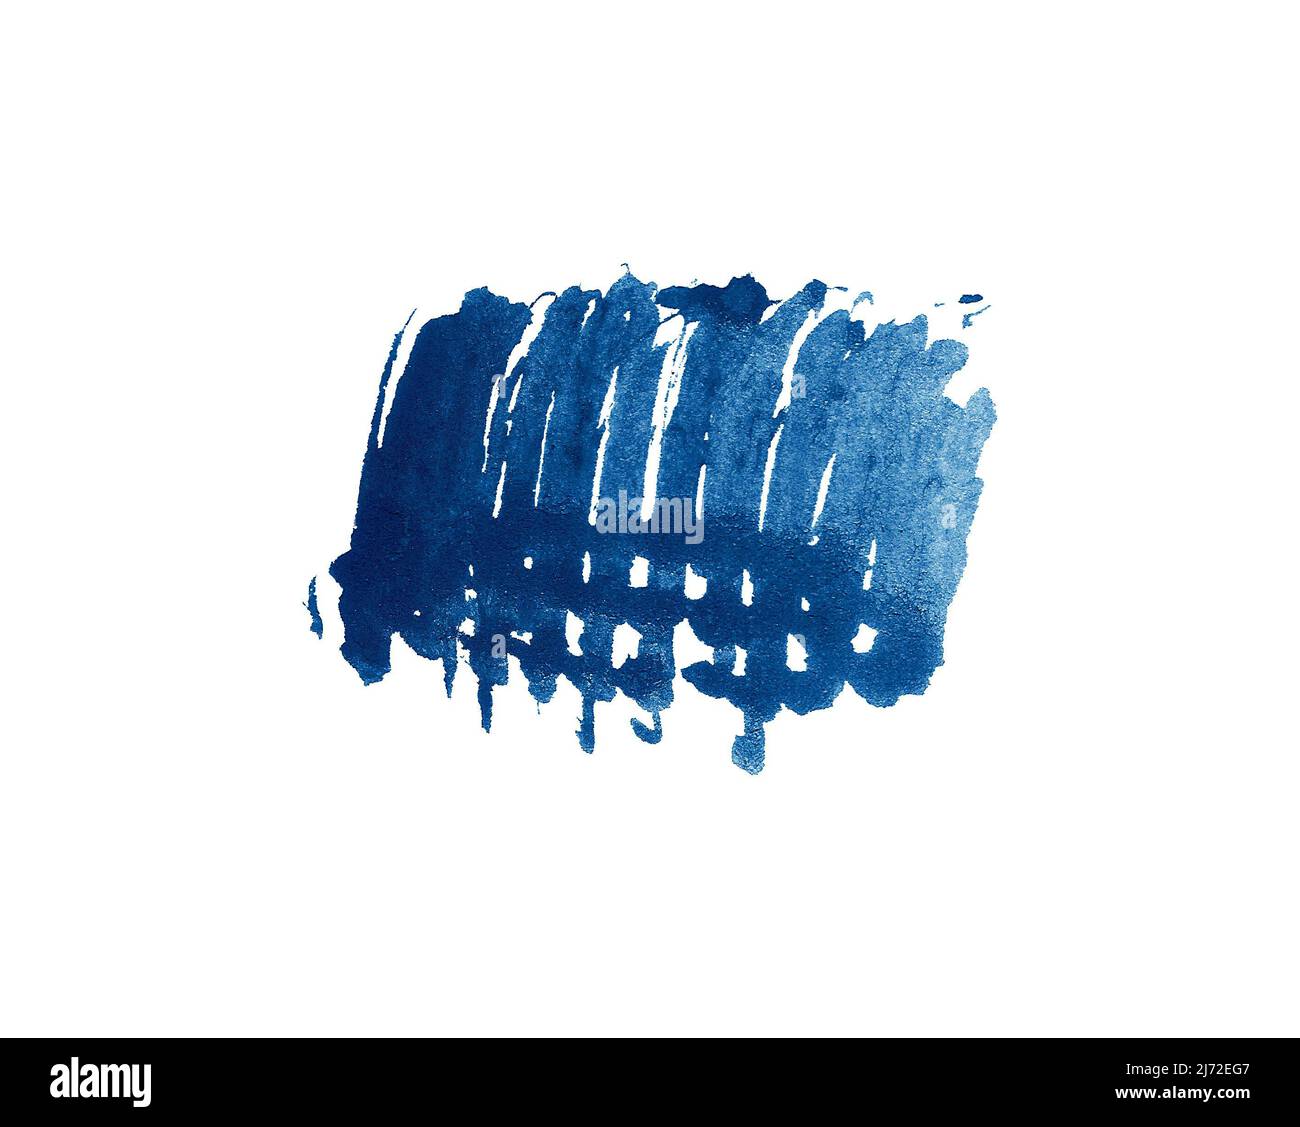 Azul índigo oscuro acuarela artística forma abstact pincel trazo aislado sobre fondo blanco Foto de stock